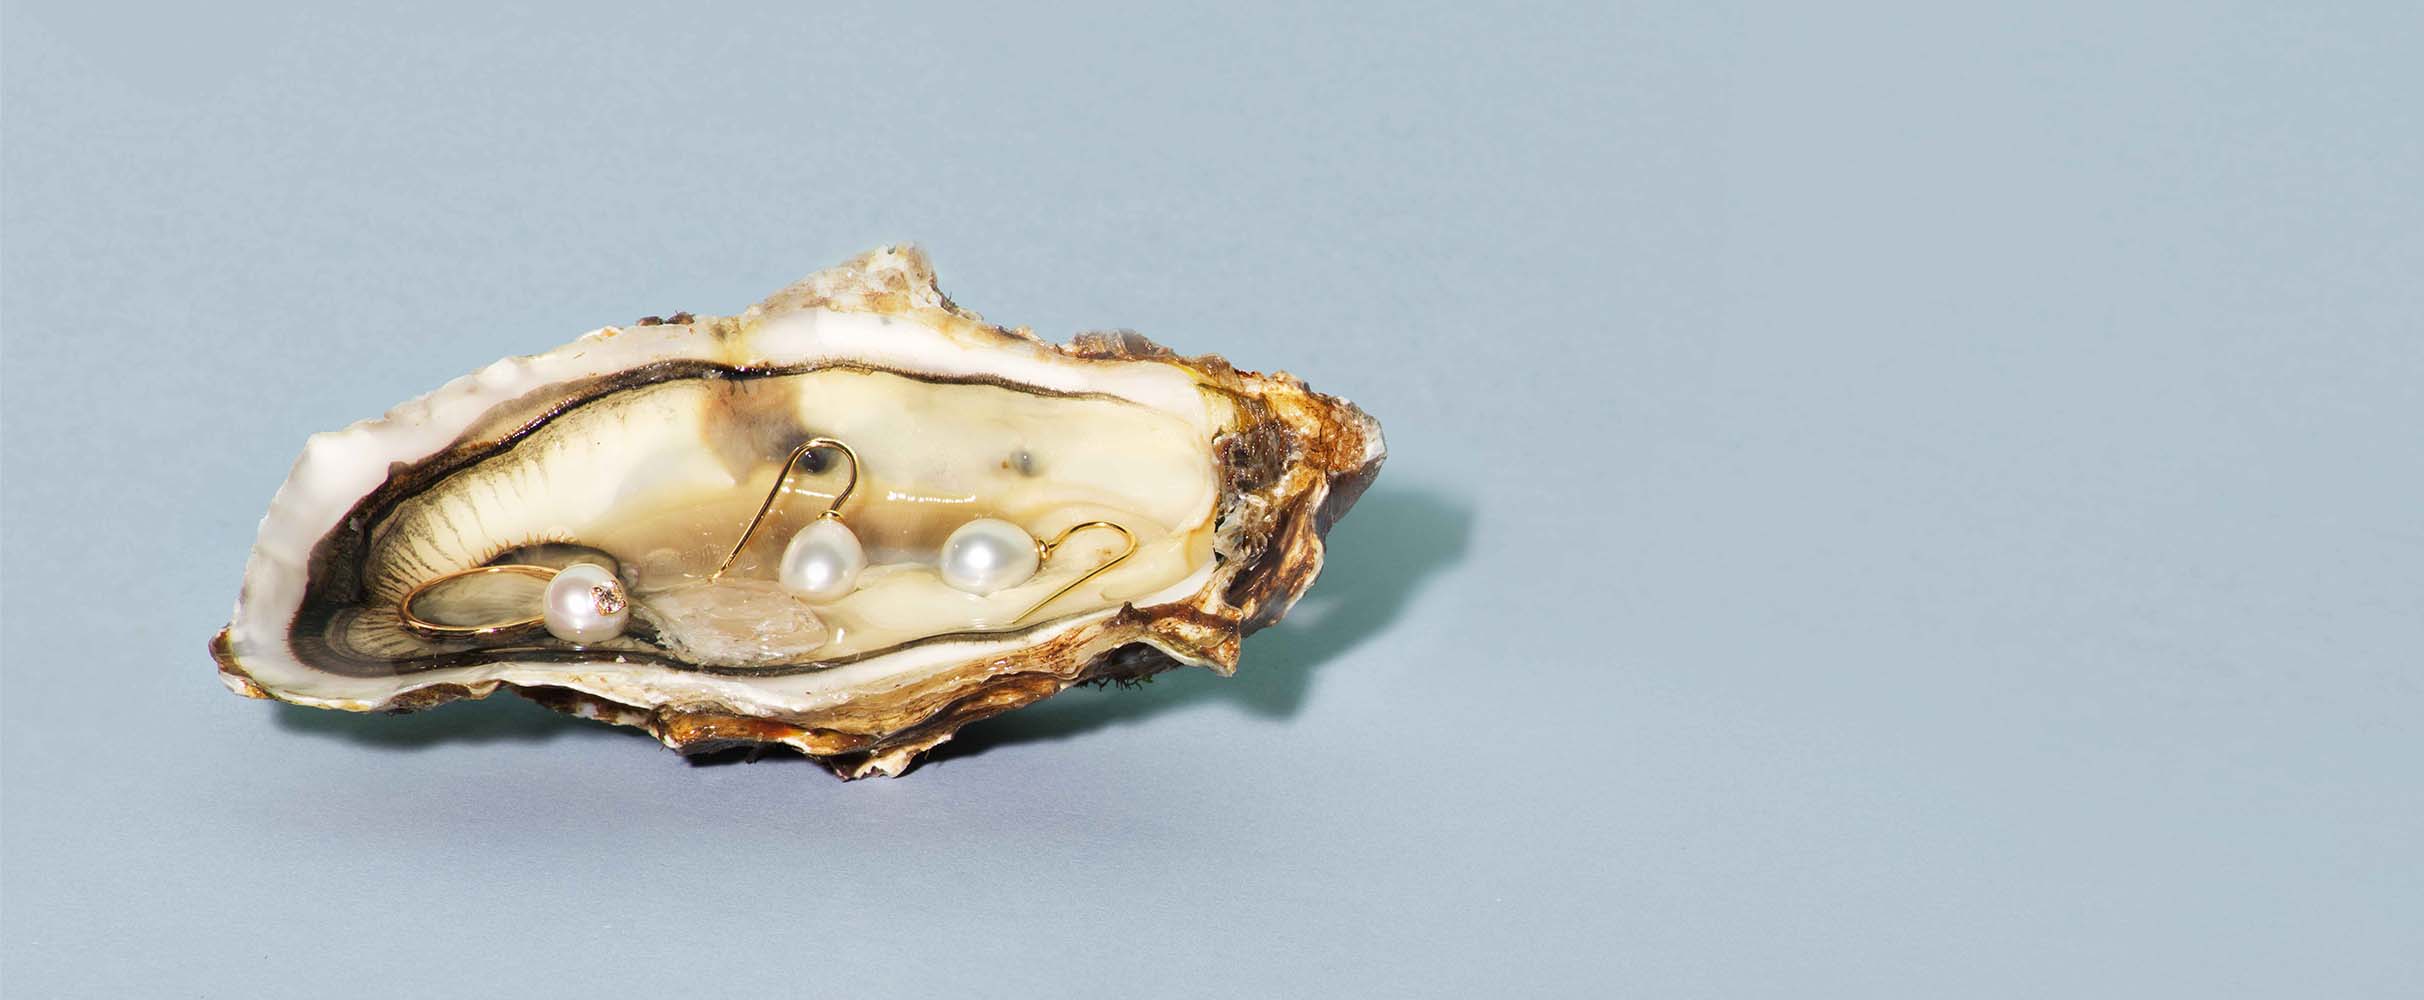 Koester de oester: de 8 leukste plekken om een oester te happen